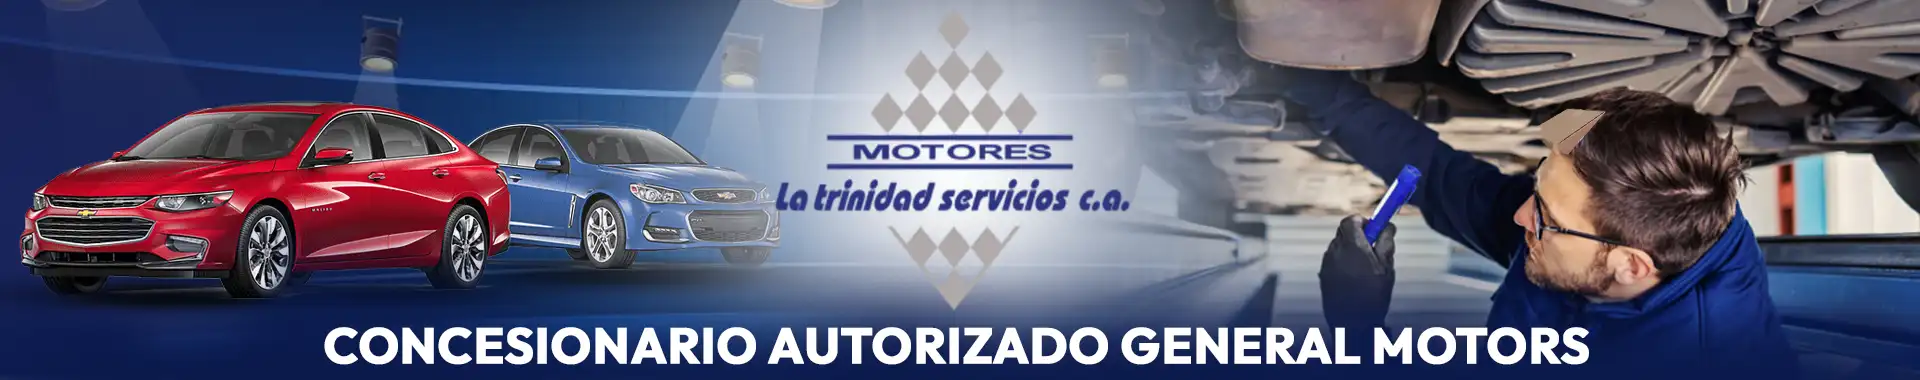 Imagen 1 del perfil de Motores La Trinidad - Servicios